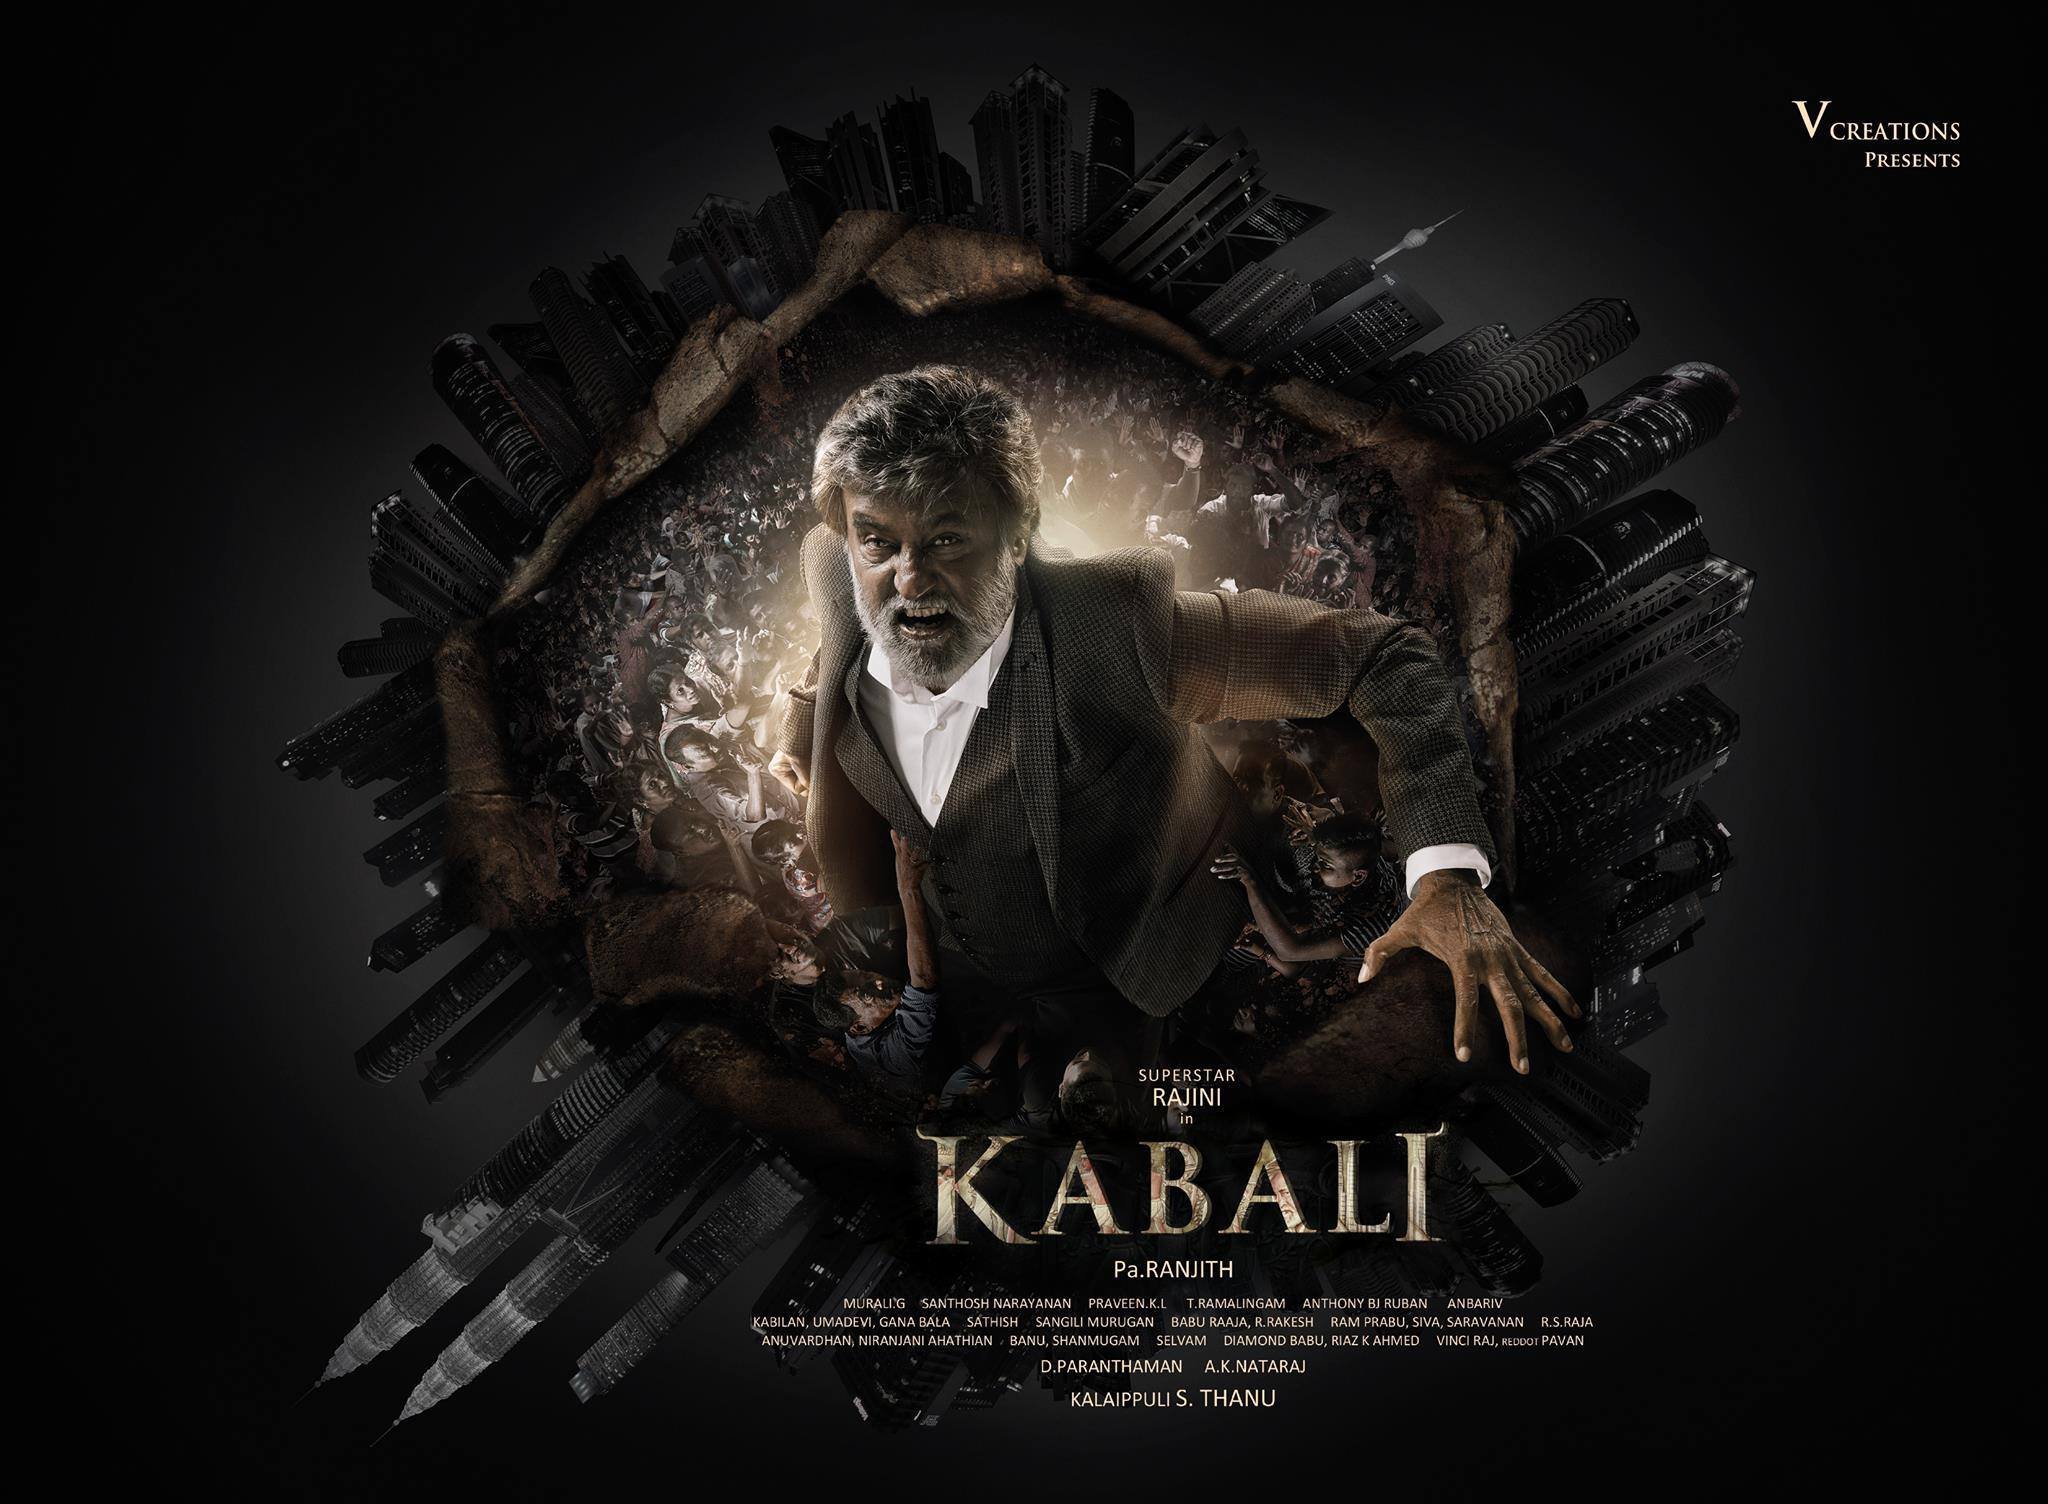 watch online movie kabali 2016